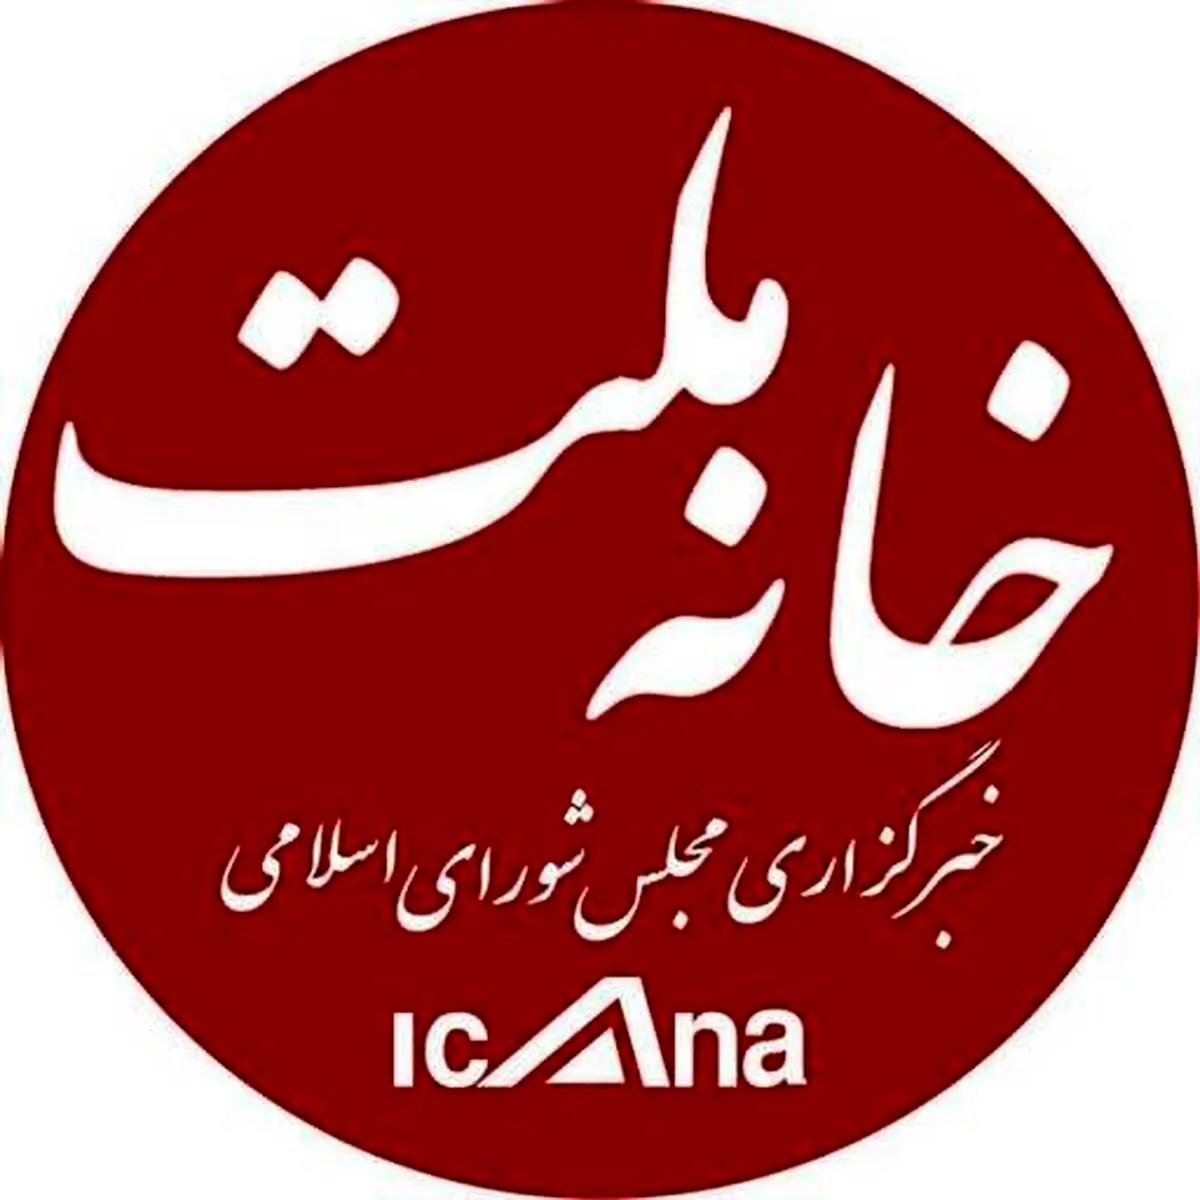 خبرگزاری مجلس از دسترس خارج شد
